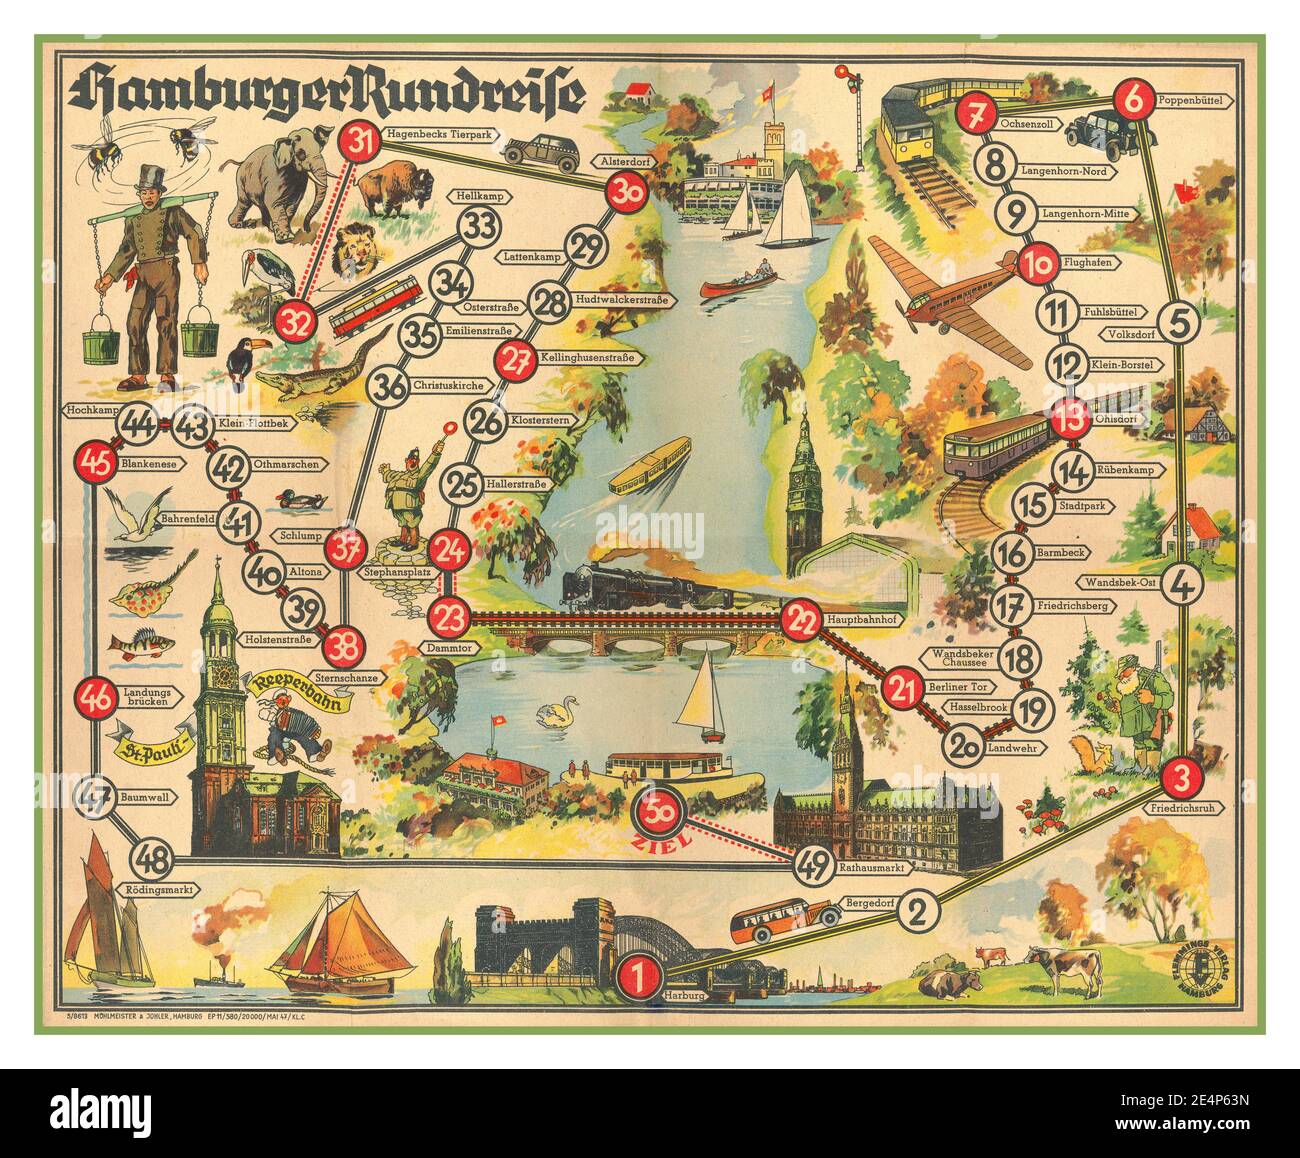 Allemagne de l'après-guerre 1947 carte touristique d'Hambourg, Allemagne, publiée en 1947. Hambourg avait été très lourdement endommagé par les bombardements alliés pendant la guerre, et une grande partie de la ville n'a pas été reconstruite pendant des décennies. La plupart des 50 « lieux touristiques » identifiés sur cette carte sont simplement des arrêts de train et des rues ; quant aux autres, ce n'est pas clair exactement ce qui a pu être vu et visité en 1947. L'un des sites en vedette, avec l'image d'un marin en fête, est Saint-Pauli - Reeperbahn, le célèbre quartier rouge de Hambourg. Affiche publiée dans la période peu après la Seconde Guerre mondiale dans le cadre des efforts de reconstruction du tourisme. Banque D'Images